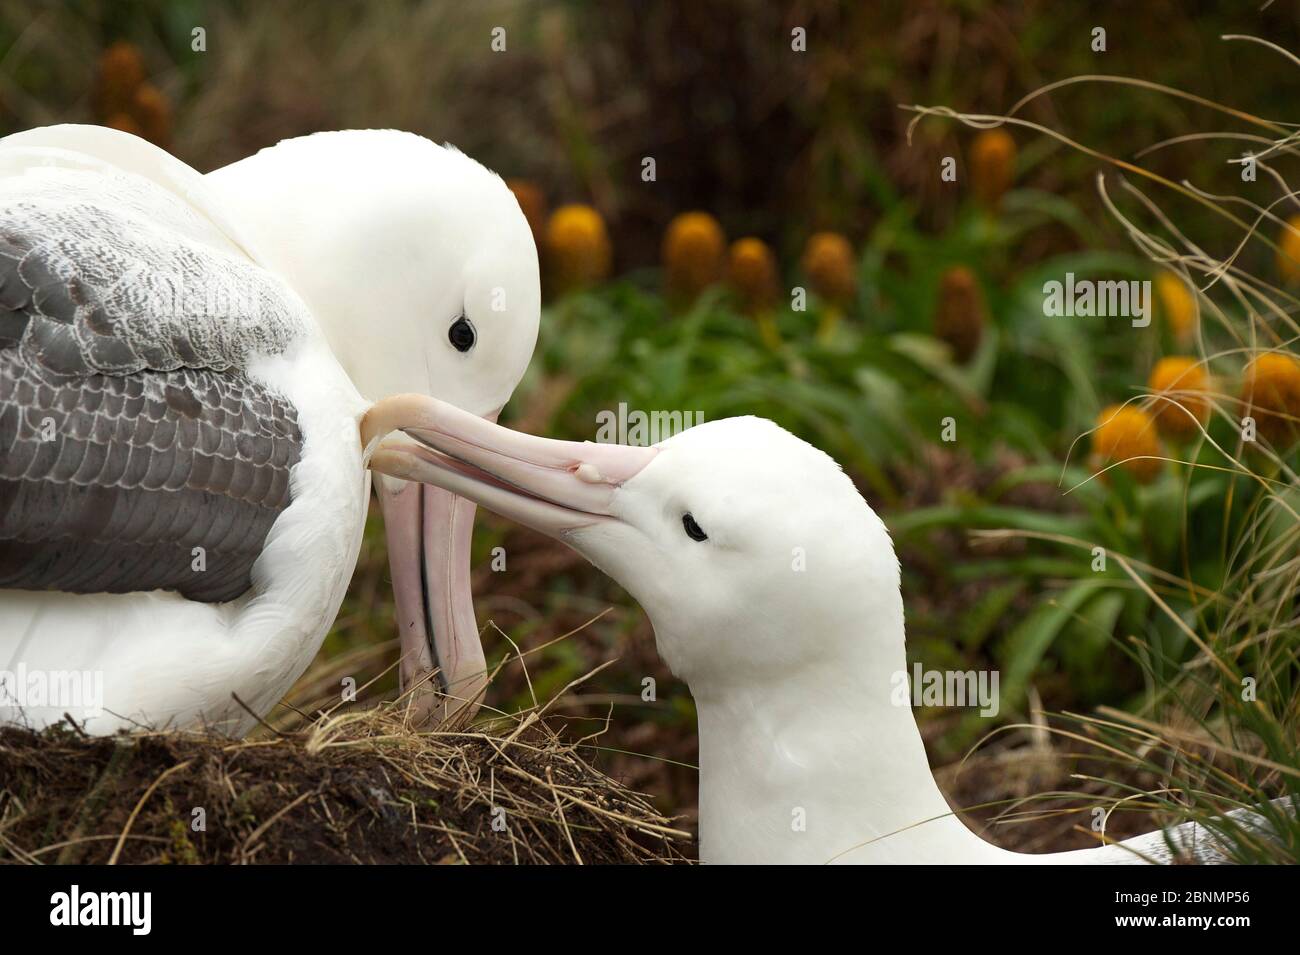 Albatros royal du Sud (Diomedea epomophora) comportement de prédation mutuelle au nid, île Campbell, sous-antarctique Nouvelle-Zélande janvier Banque D'Images